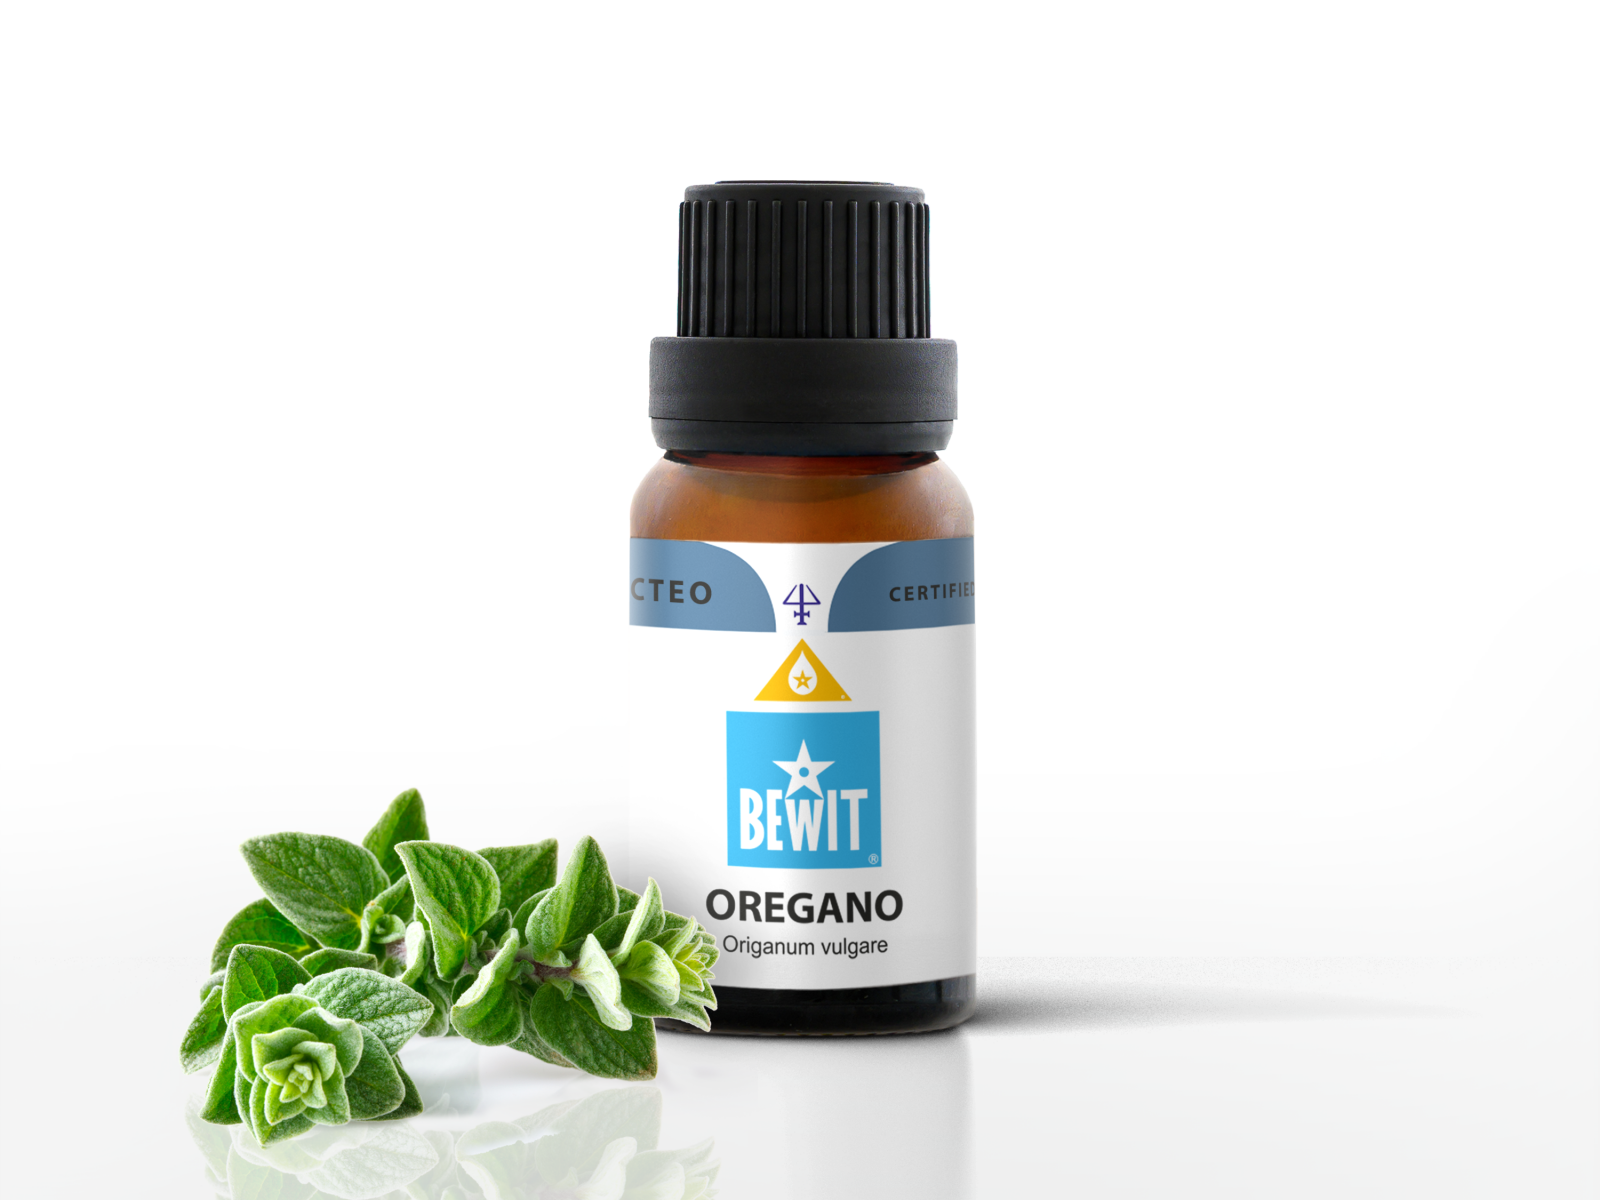 Oregano - It is a 100% pure essential oil - 1